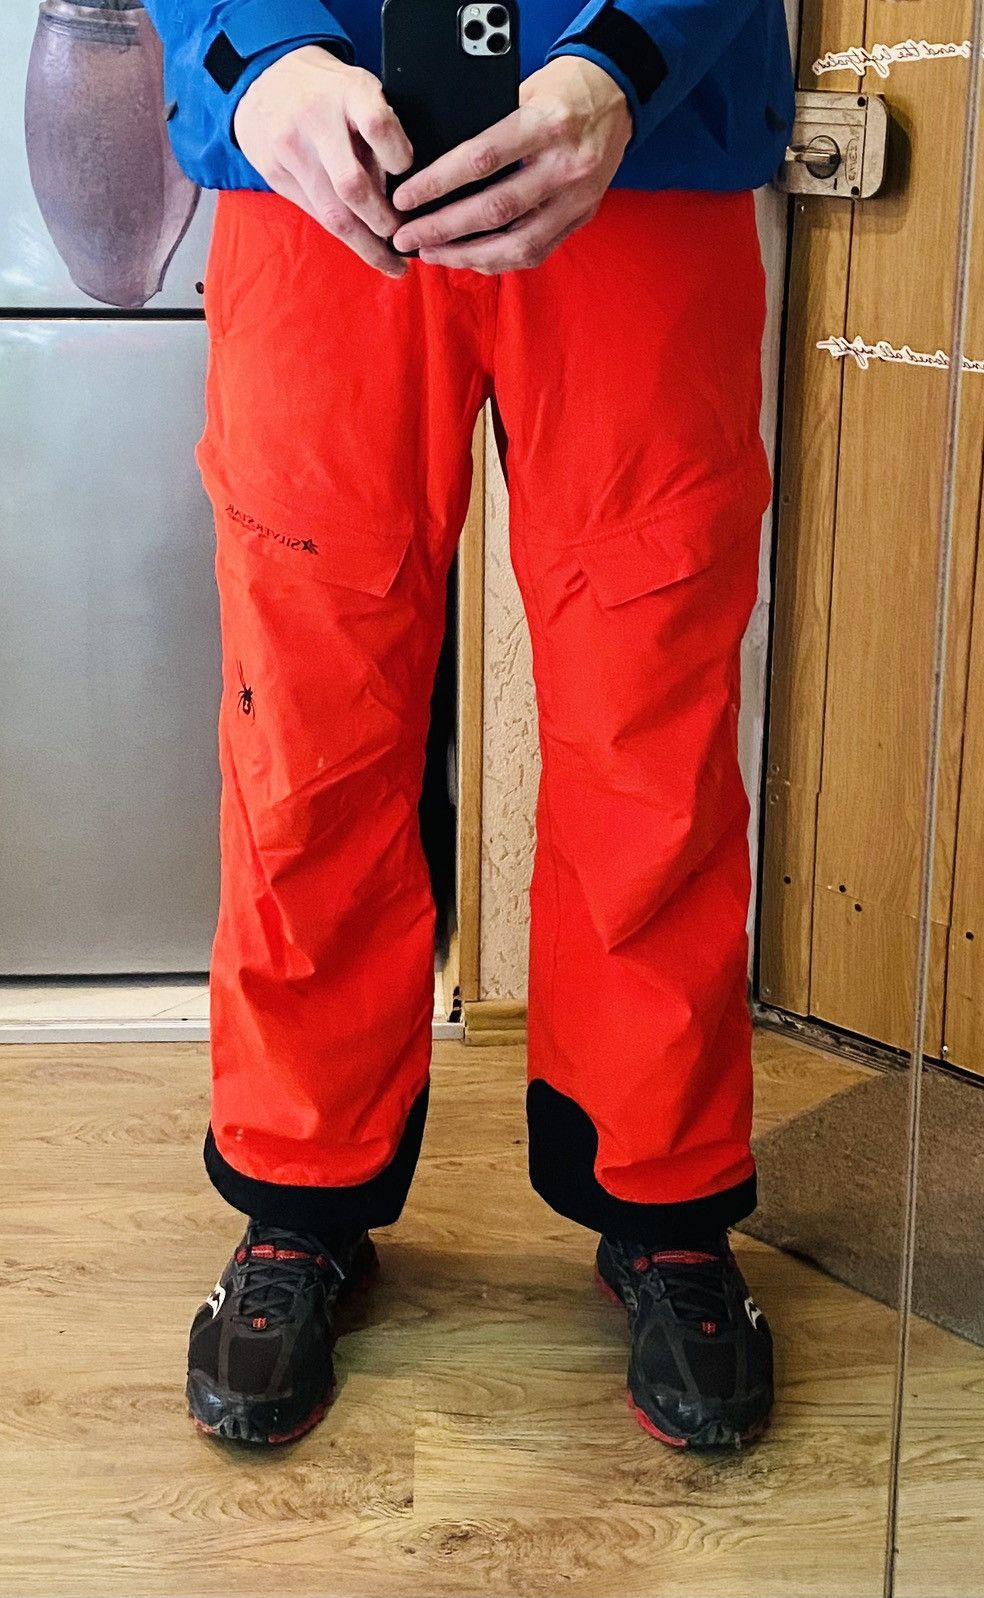 Outdoor Life - Spyder Pants Snowboarding Ski Outdoor Orange Men's M/L - 2